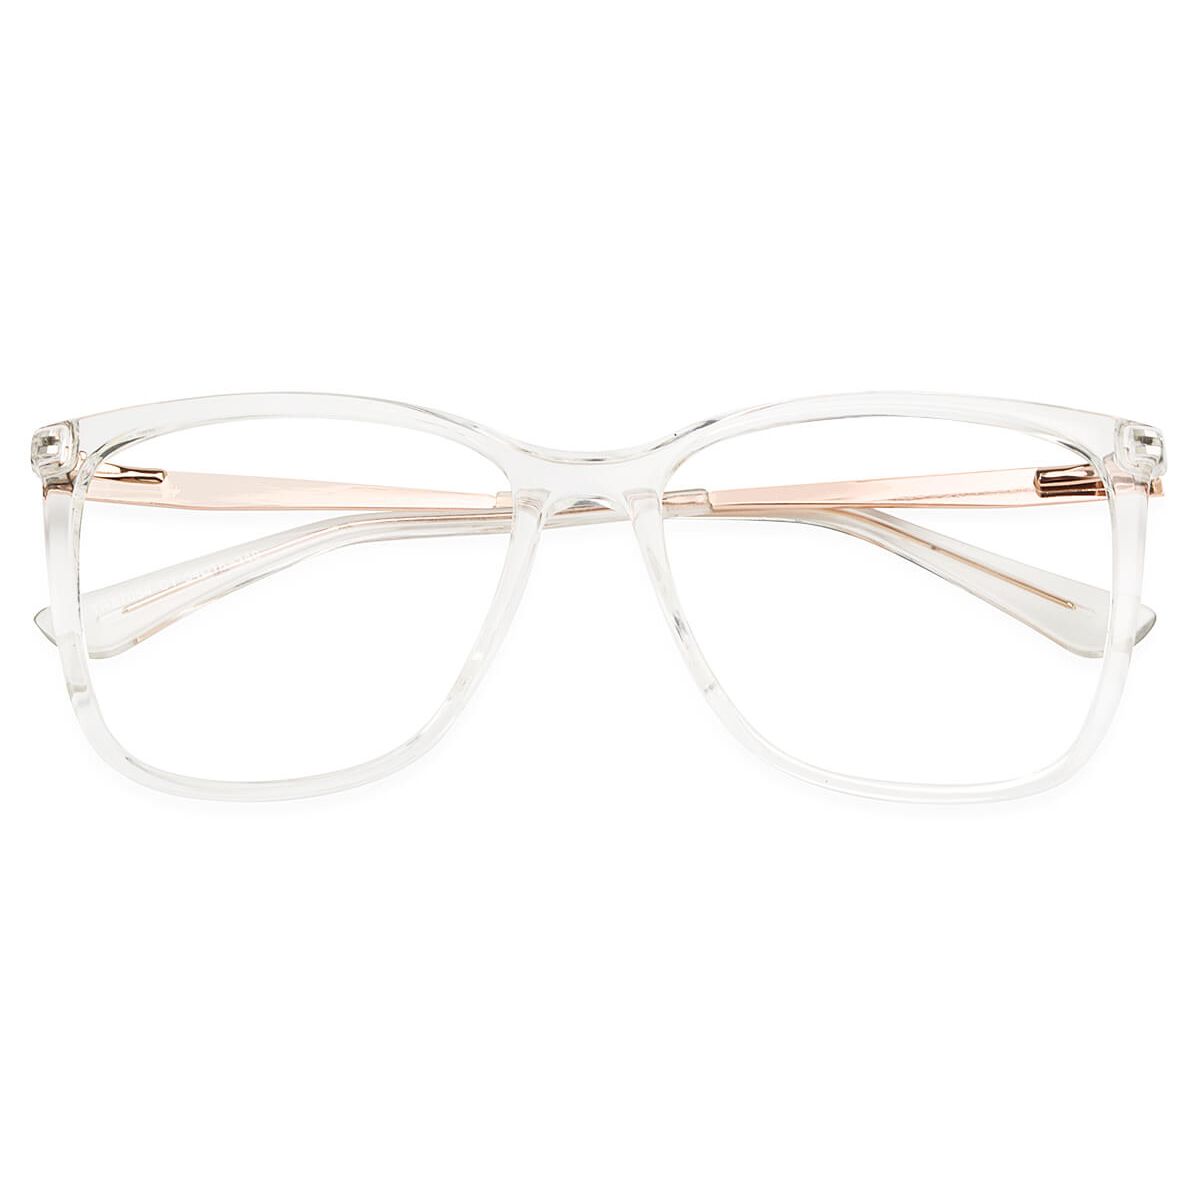 87054 Square Clear Eyeglasses Frames | Leoptique